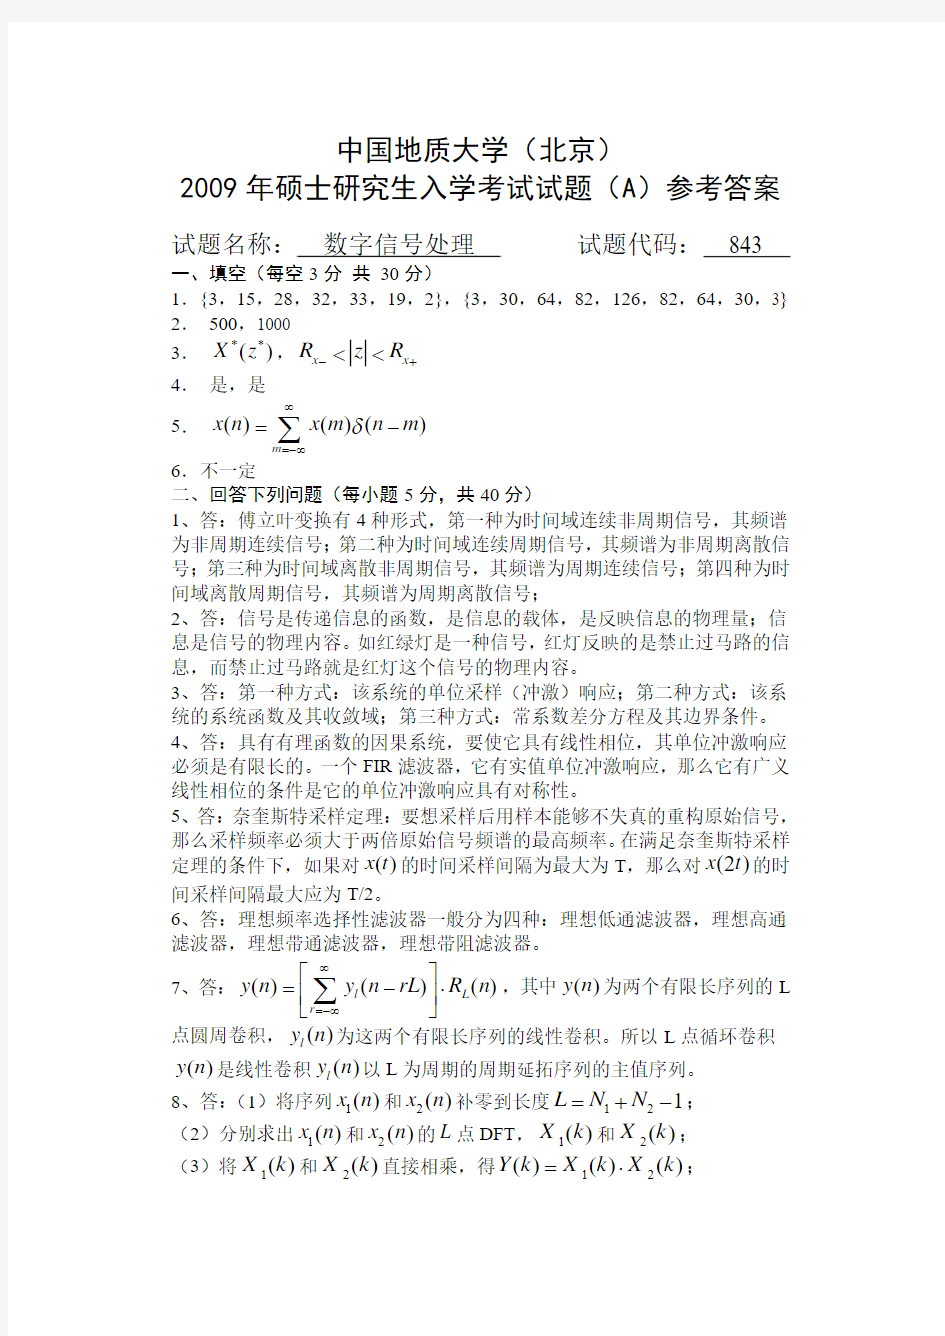 中国地质大学(北京)2009年硕士研究生入学考试试题(A)答案